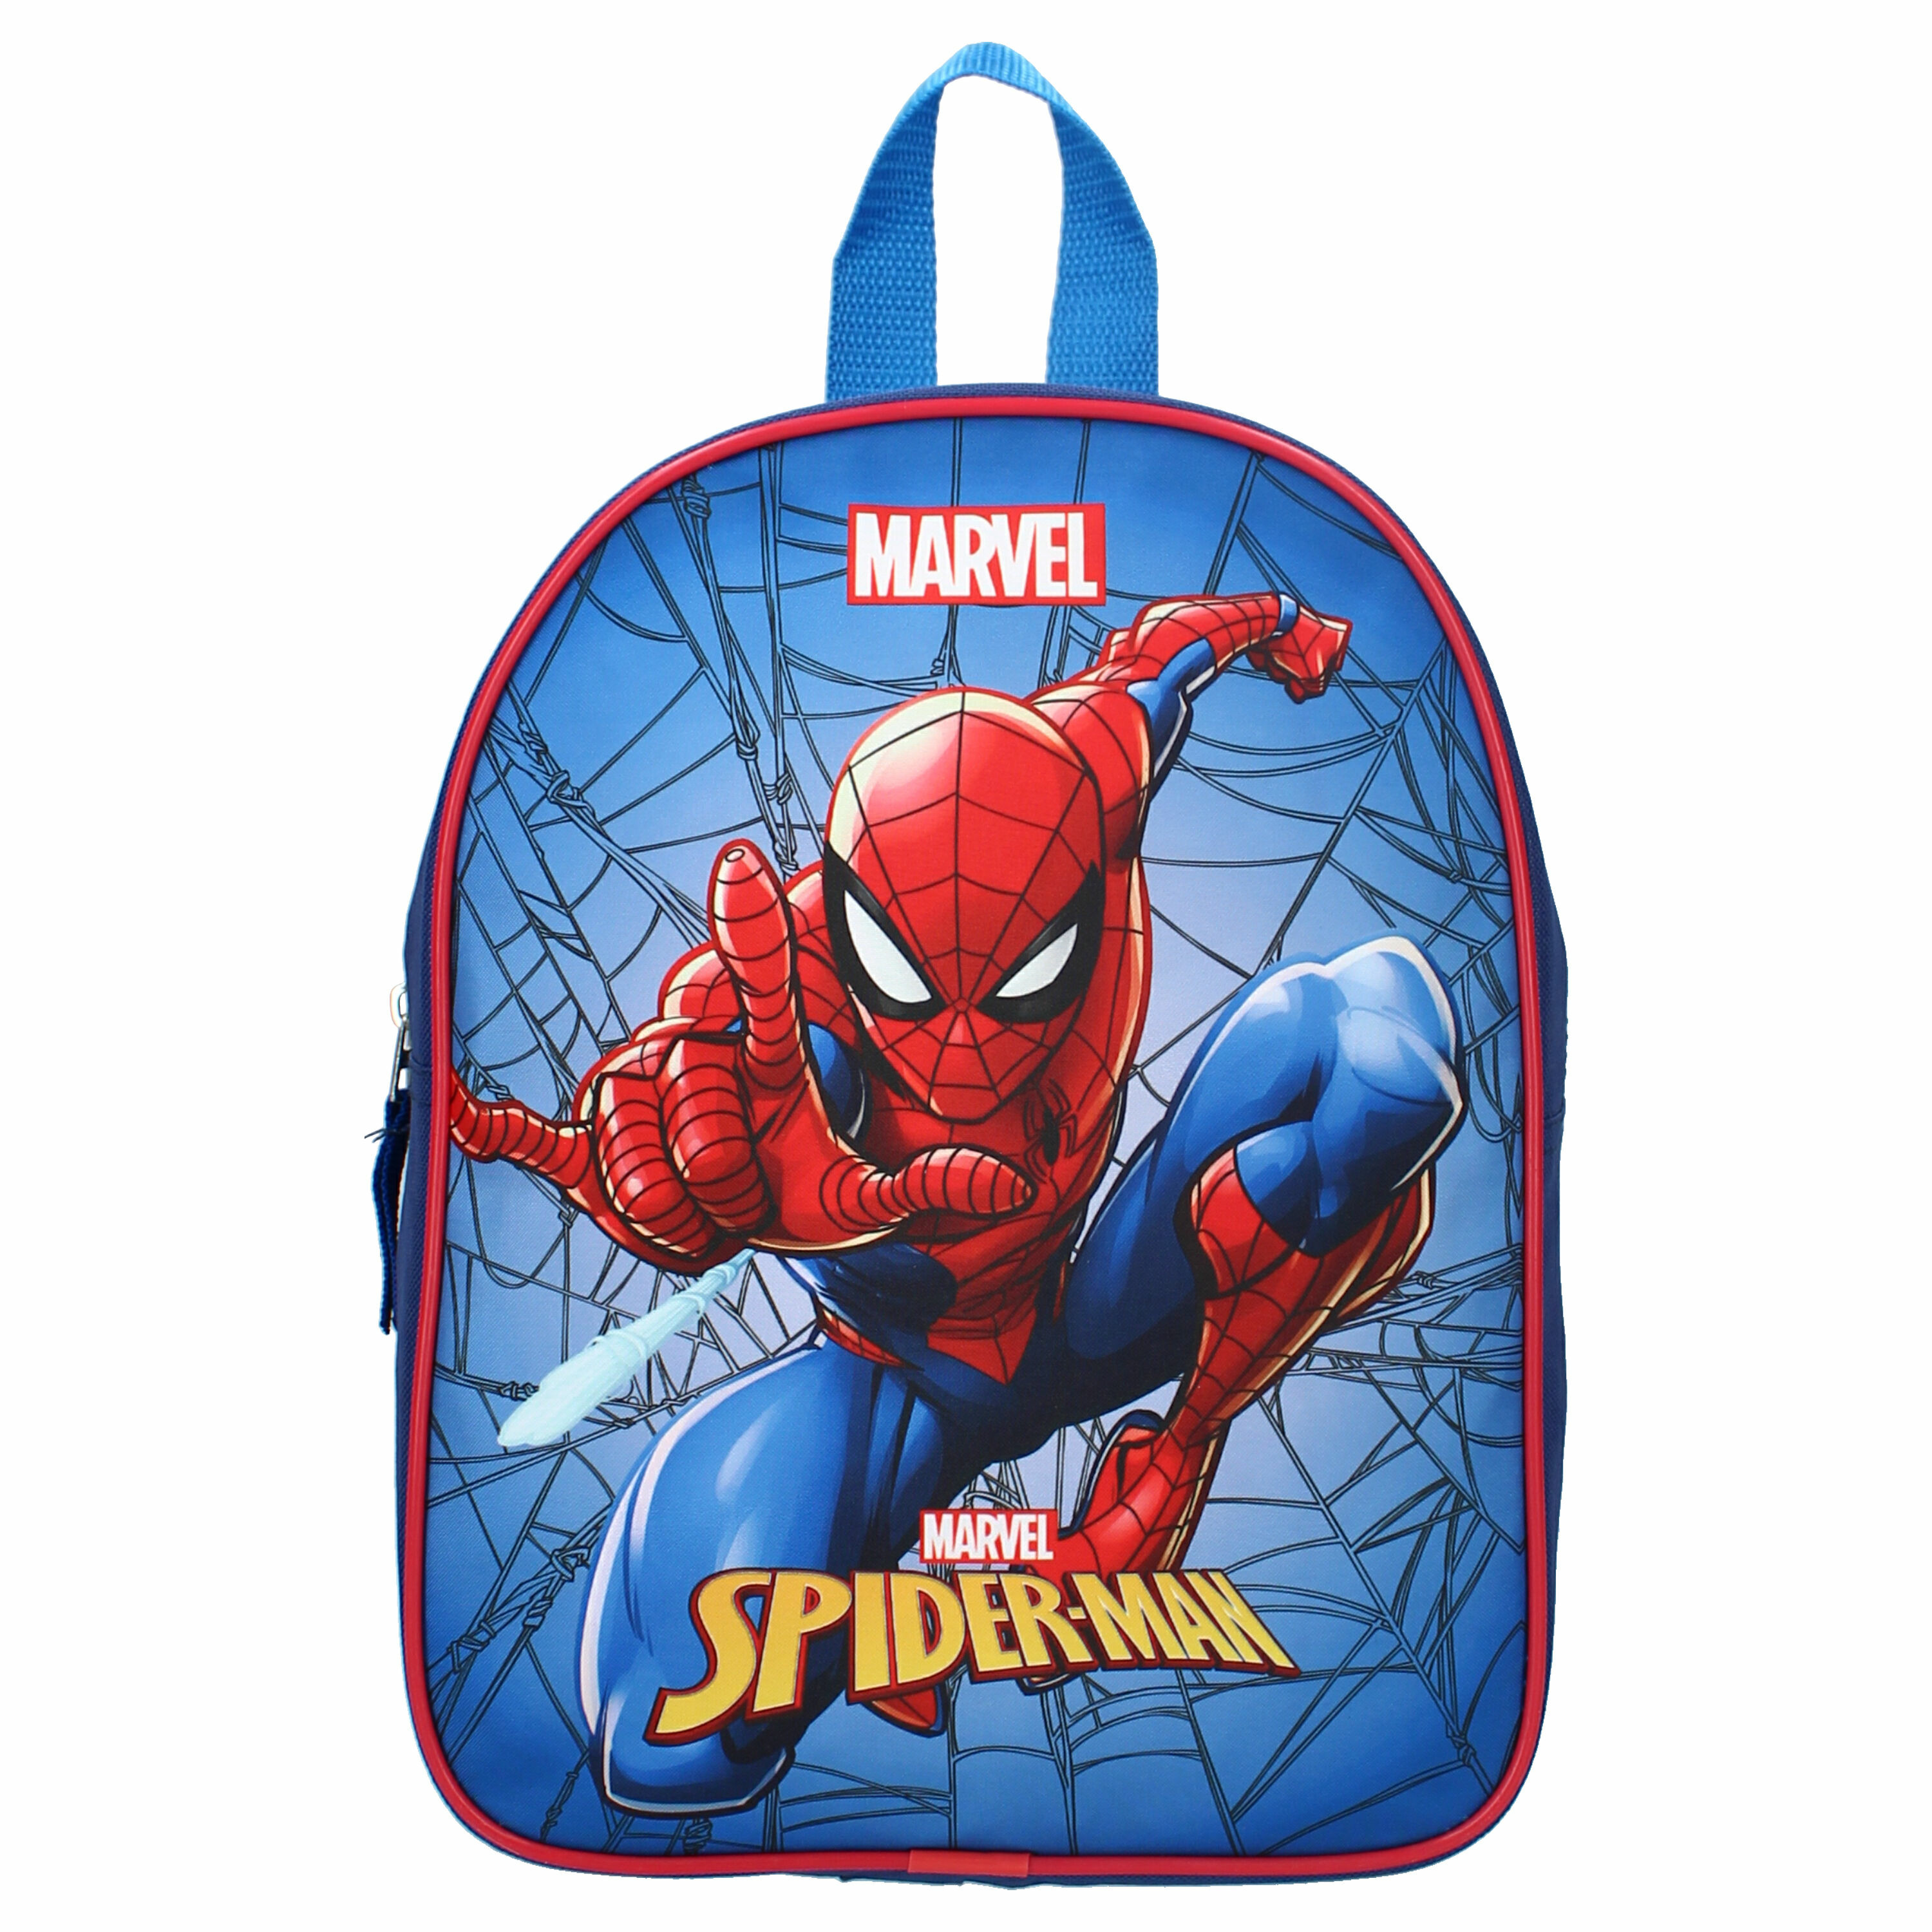 Marvel Spiderman school rugtas/rugzak 29 cm voor peuters/kleuters/kinderen -